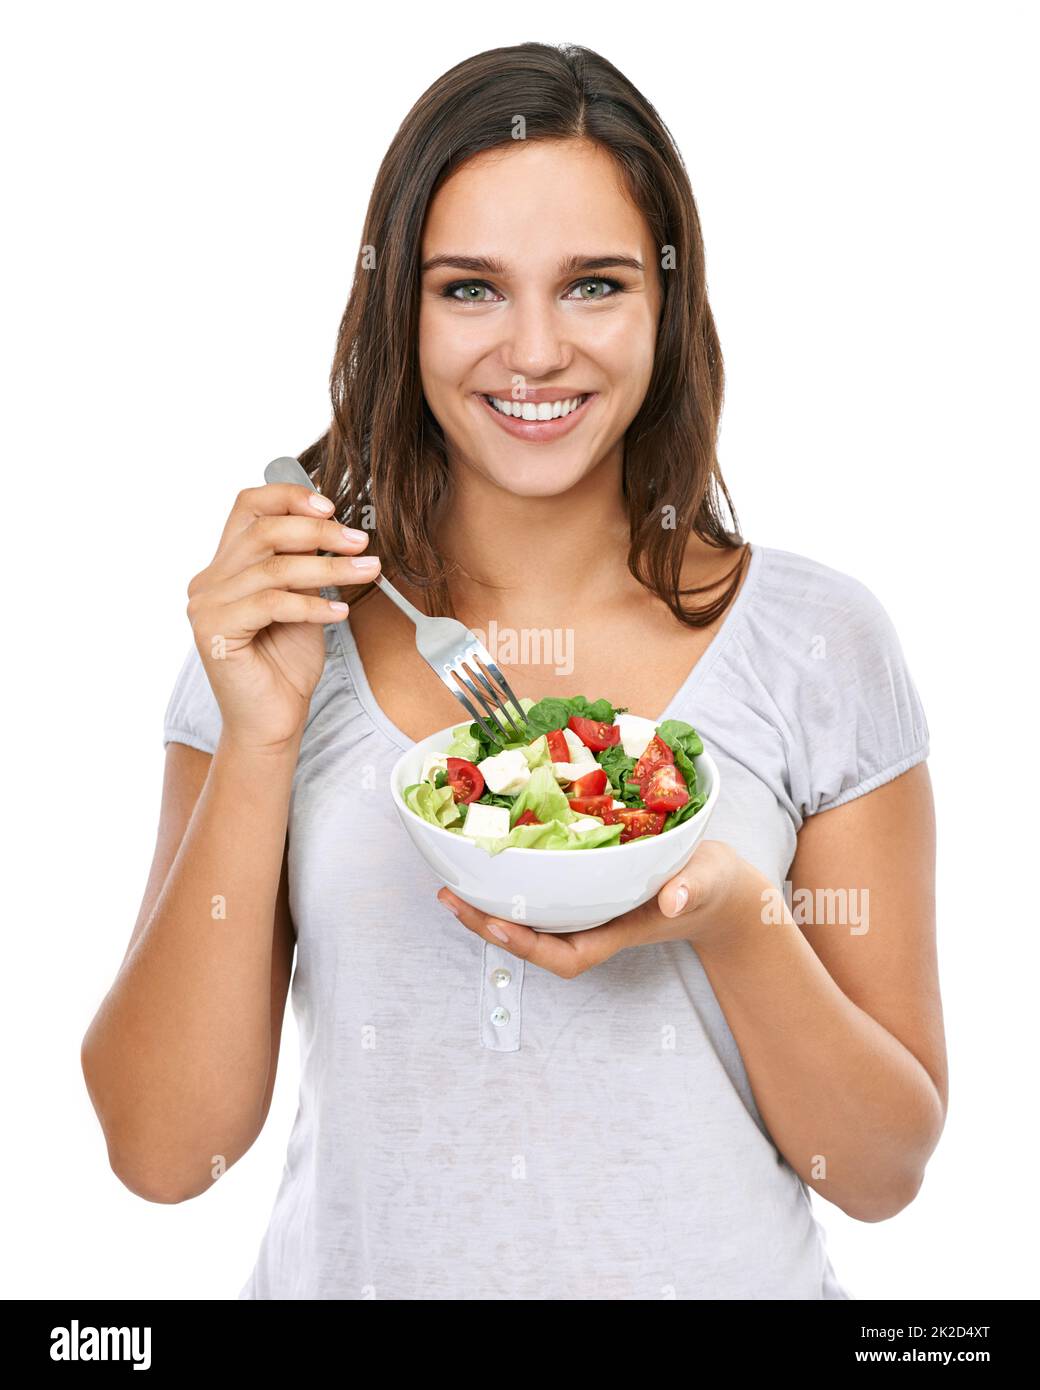 Un en-cas sain. Une jeune femme appréciant une salade fraîche isolée sur blanc. Banque D'Images